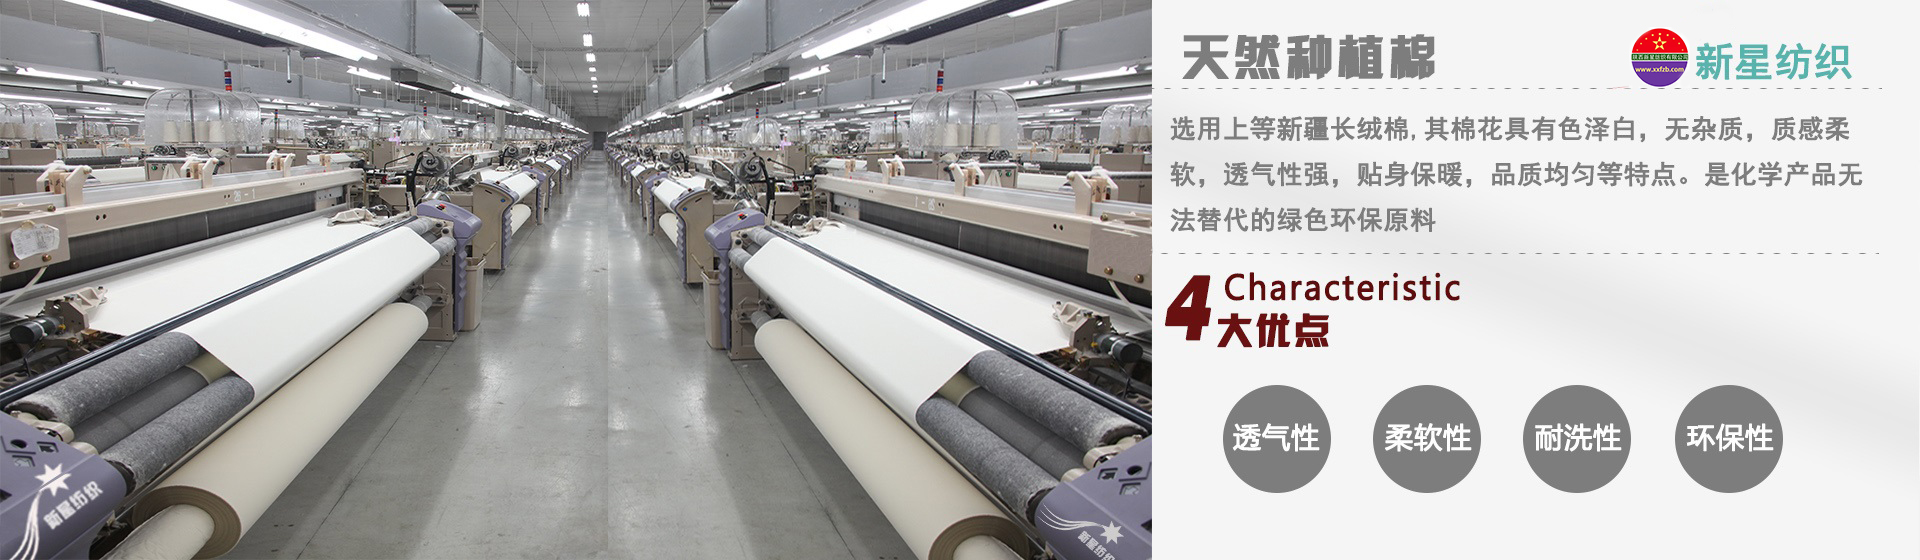 陕西凯时k66纺织向您介绍纯棉布的类型